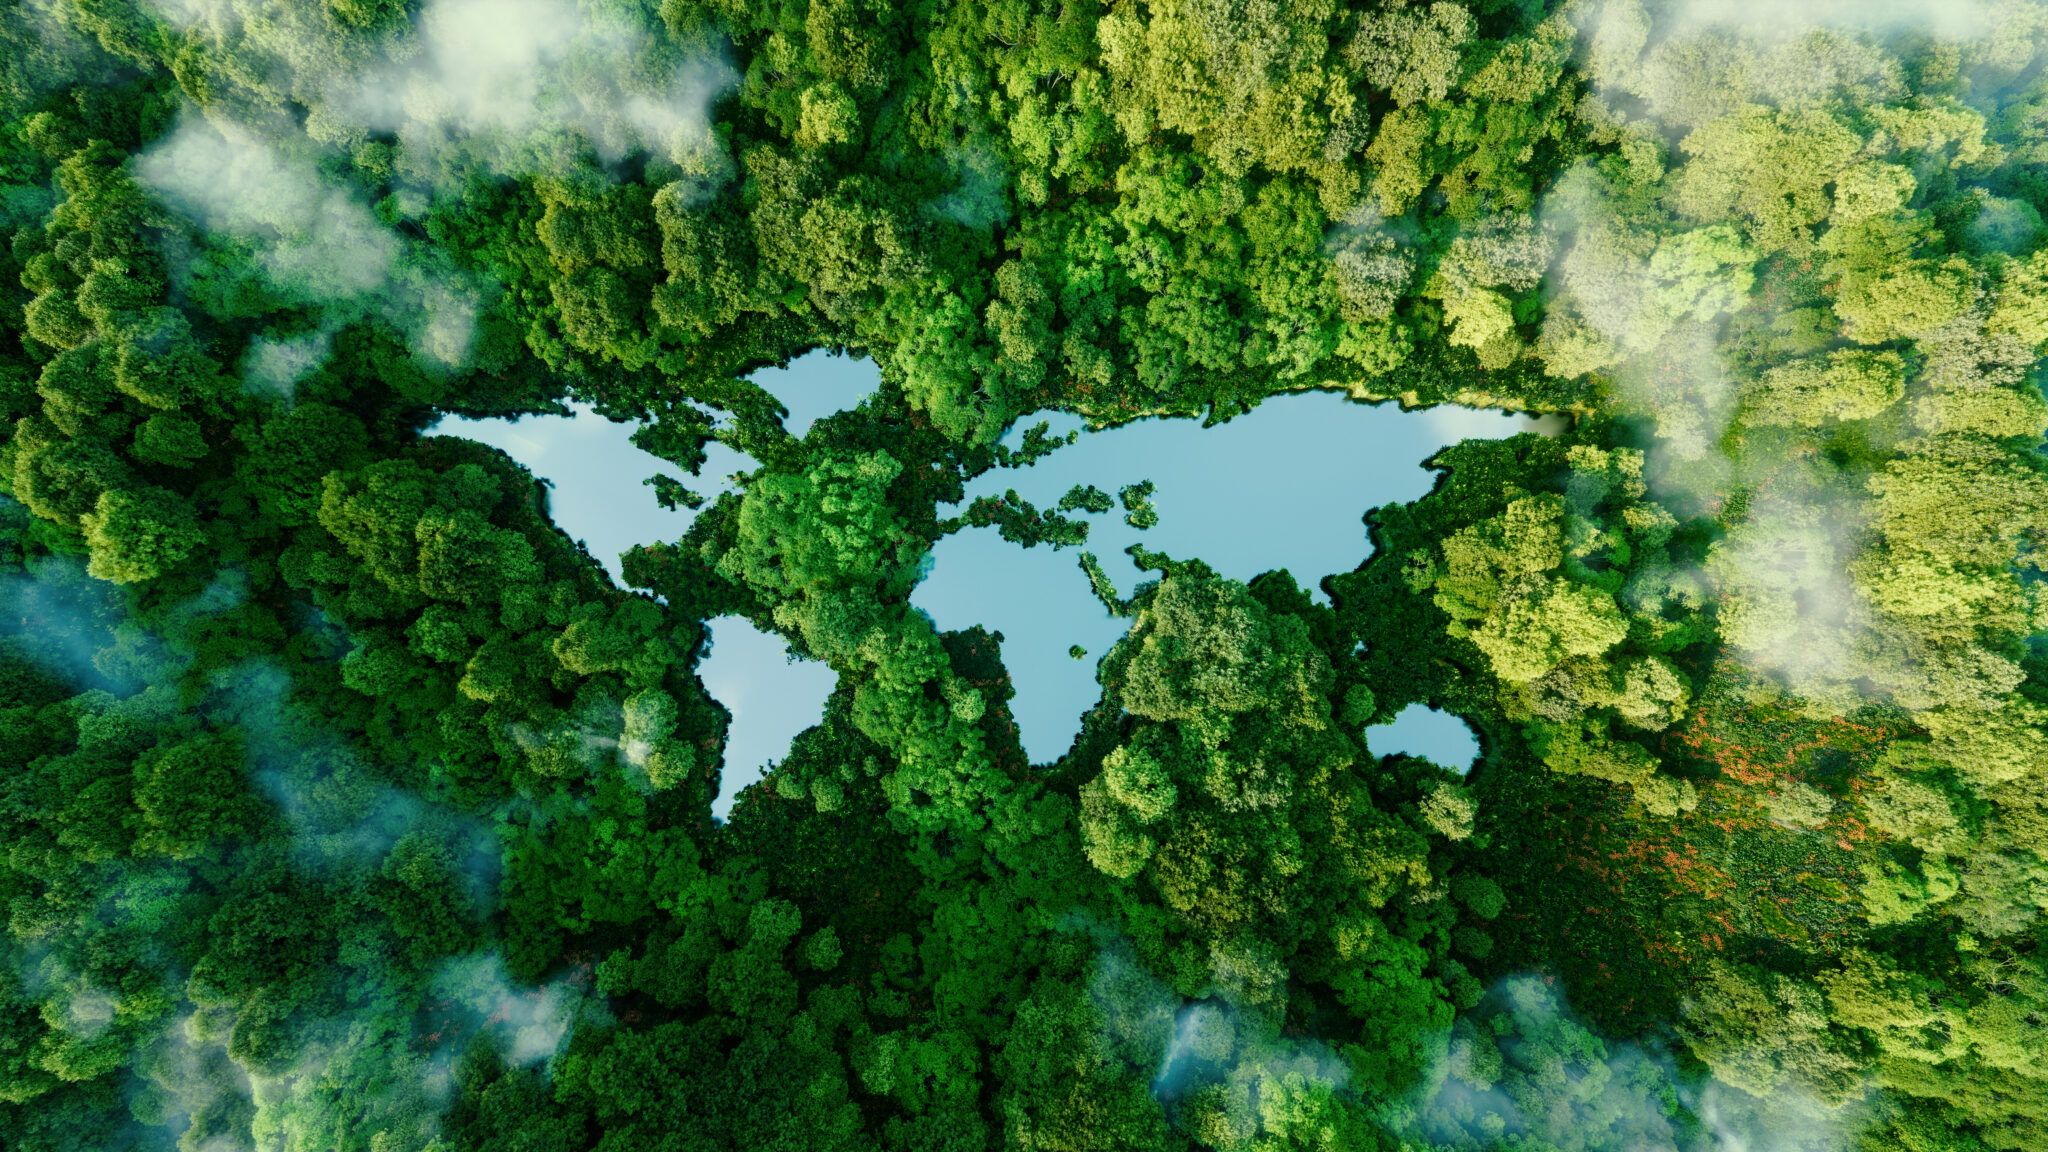 En grønn skog sett ovenfra hvor en innsjø likner et verdenskart. Grafisk illustrasjon.